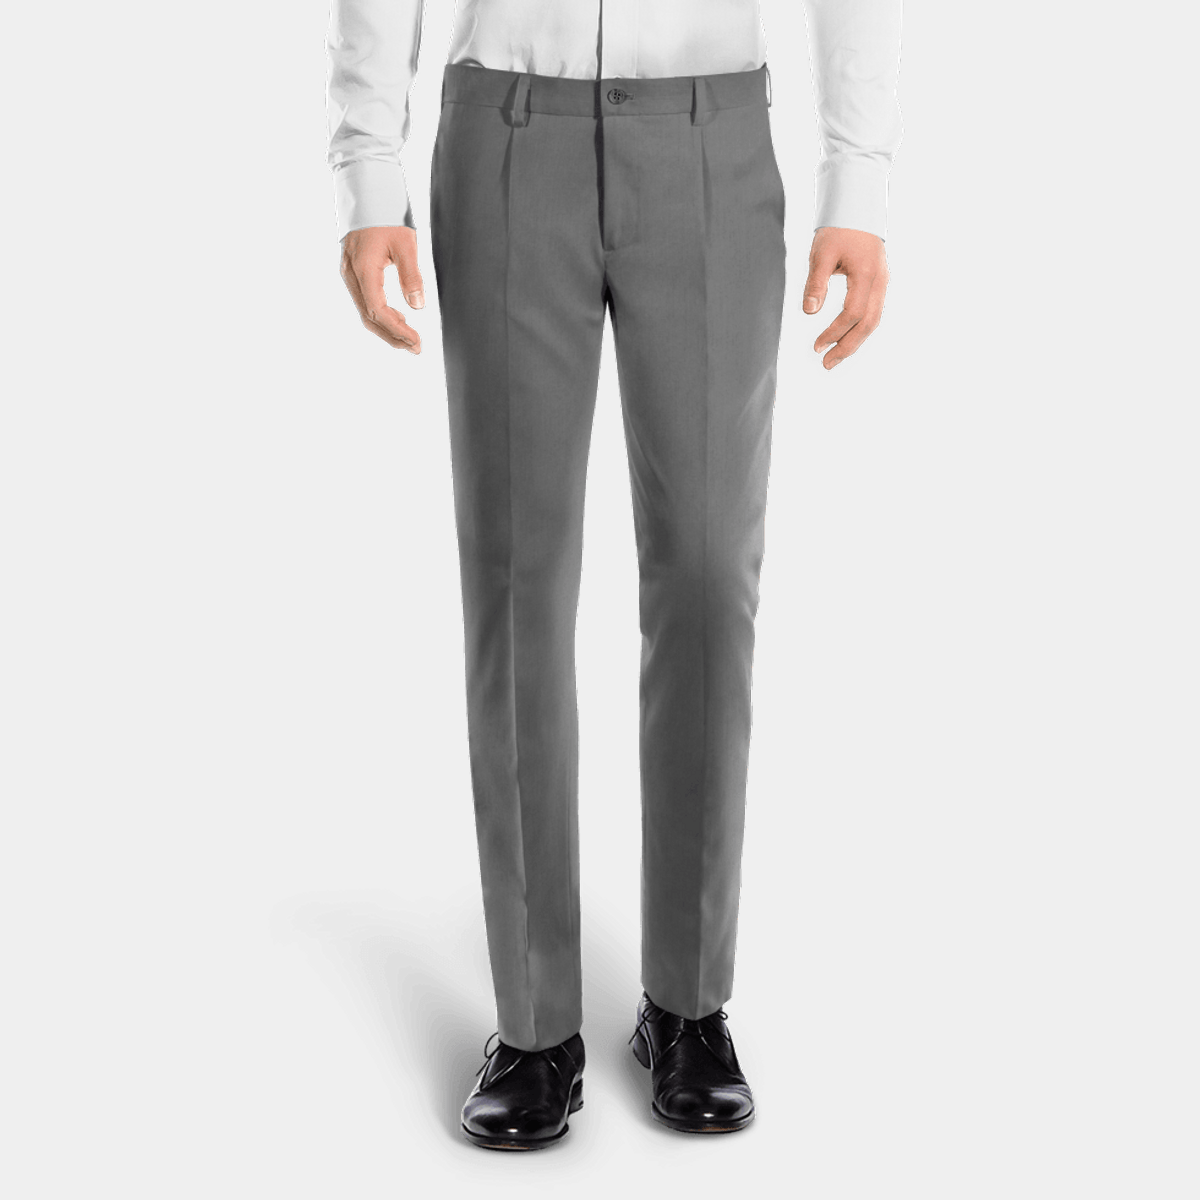 Grey slinky pleated tie waist trousers one size